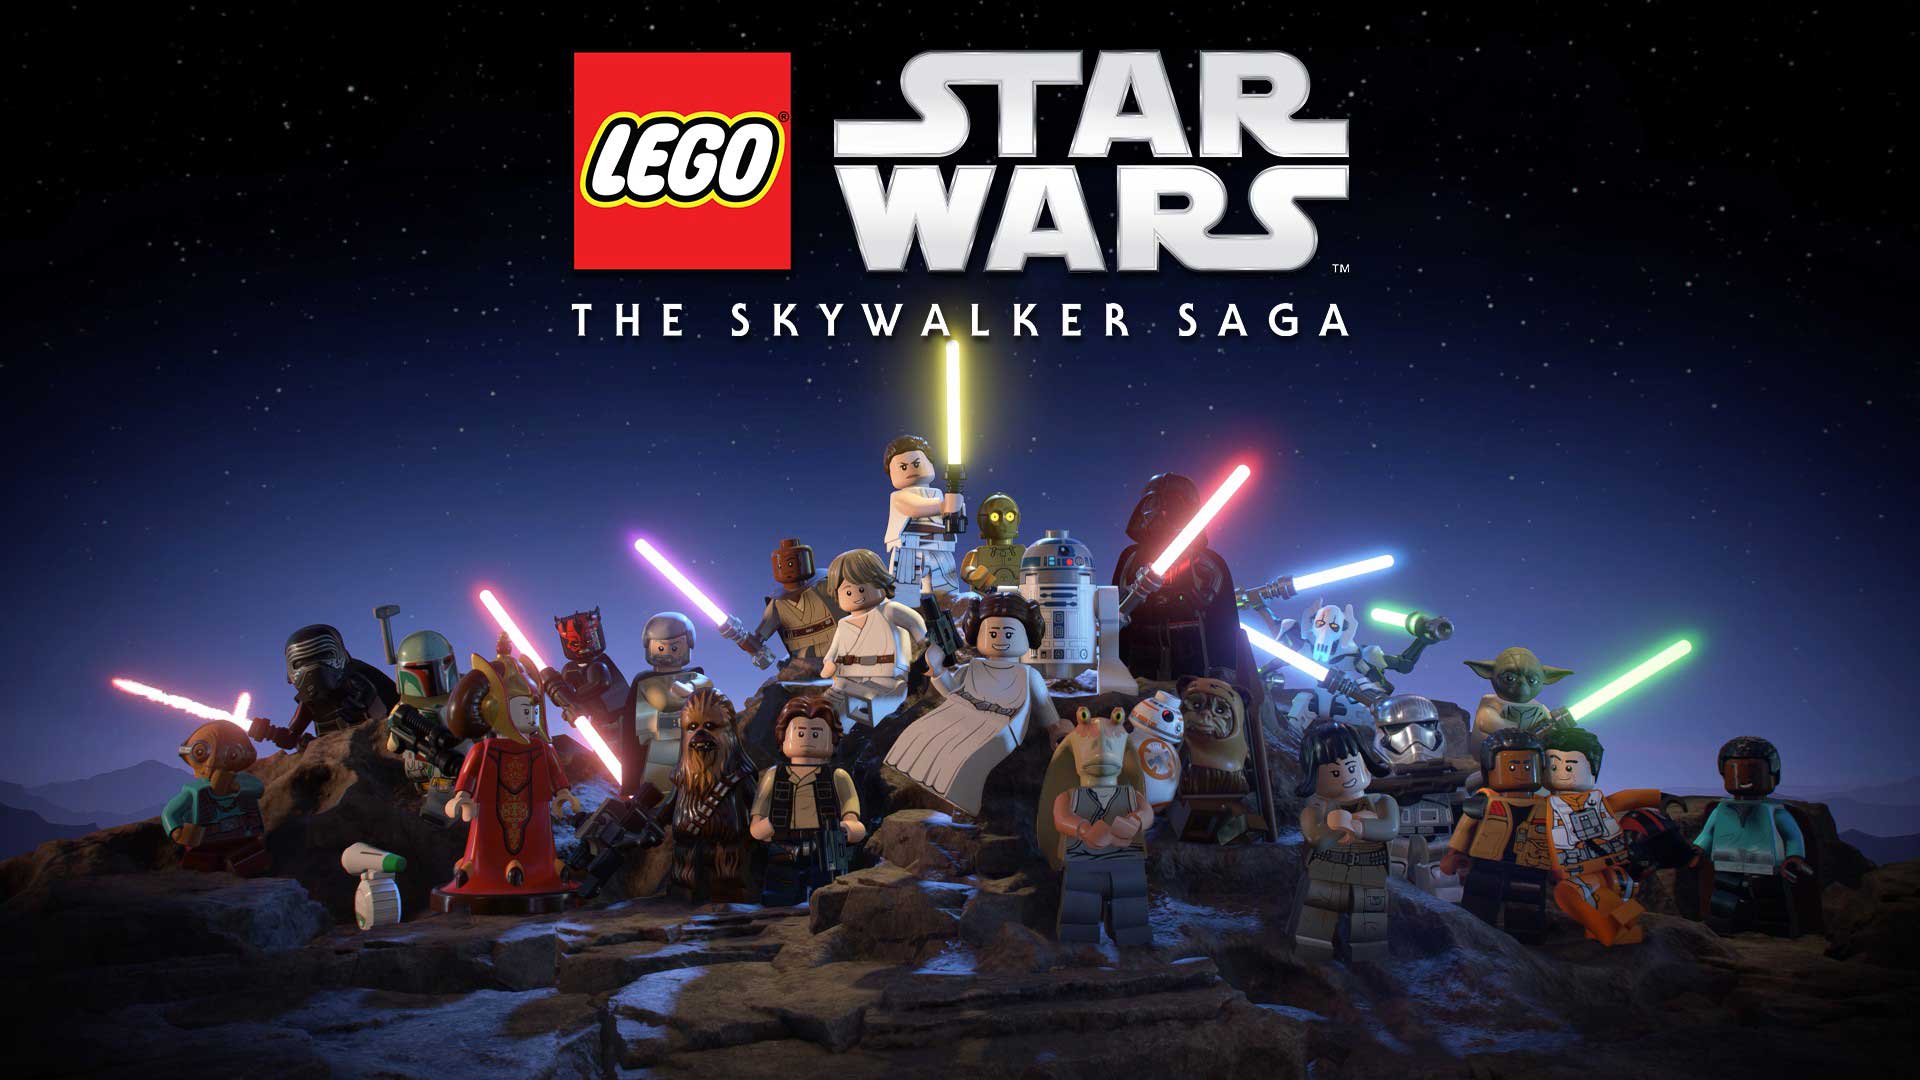 بازی LEGO Star Wars: The Skywalker Saga استودیو TT Games شرکت برادران وارنر (لگو استار وارز/جنگ ستارگان)